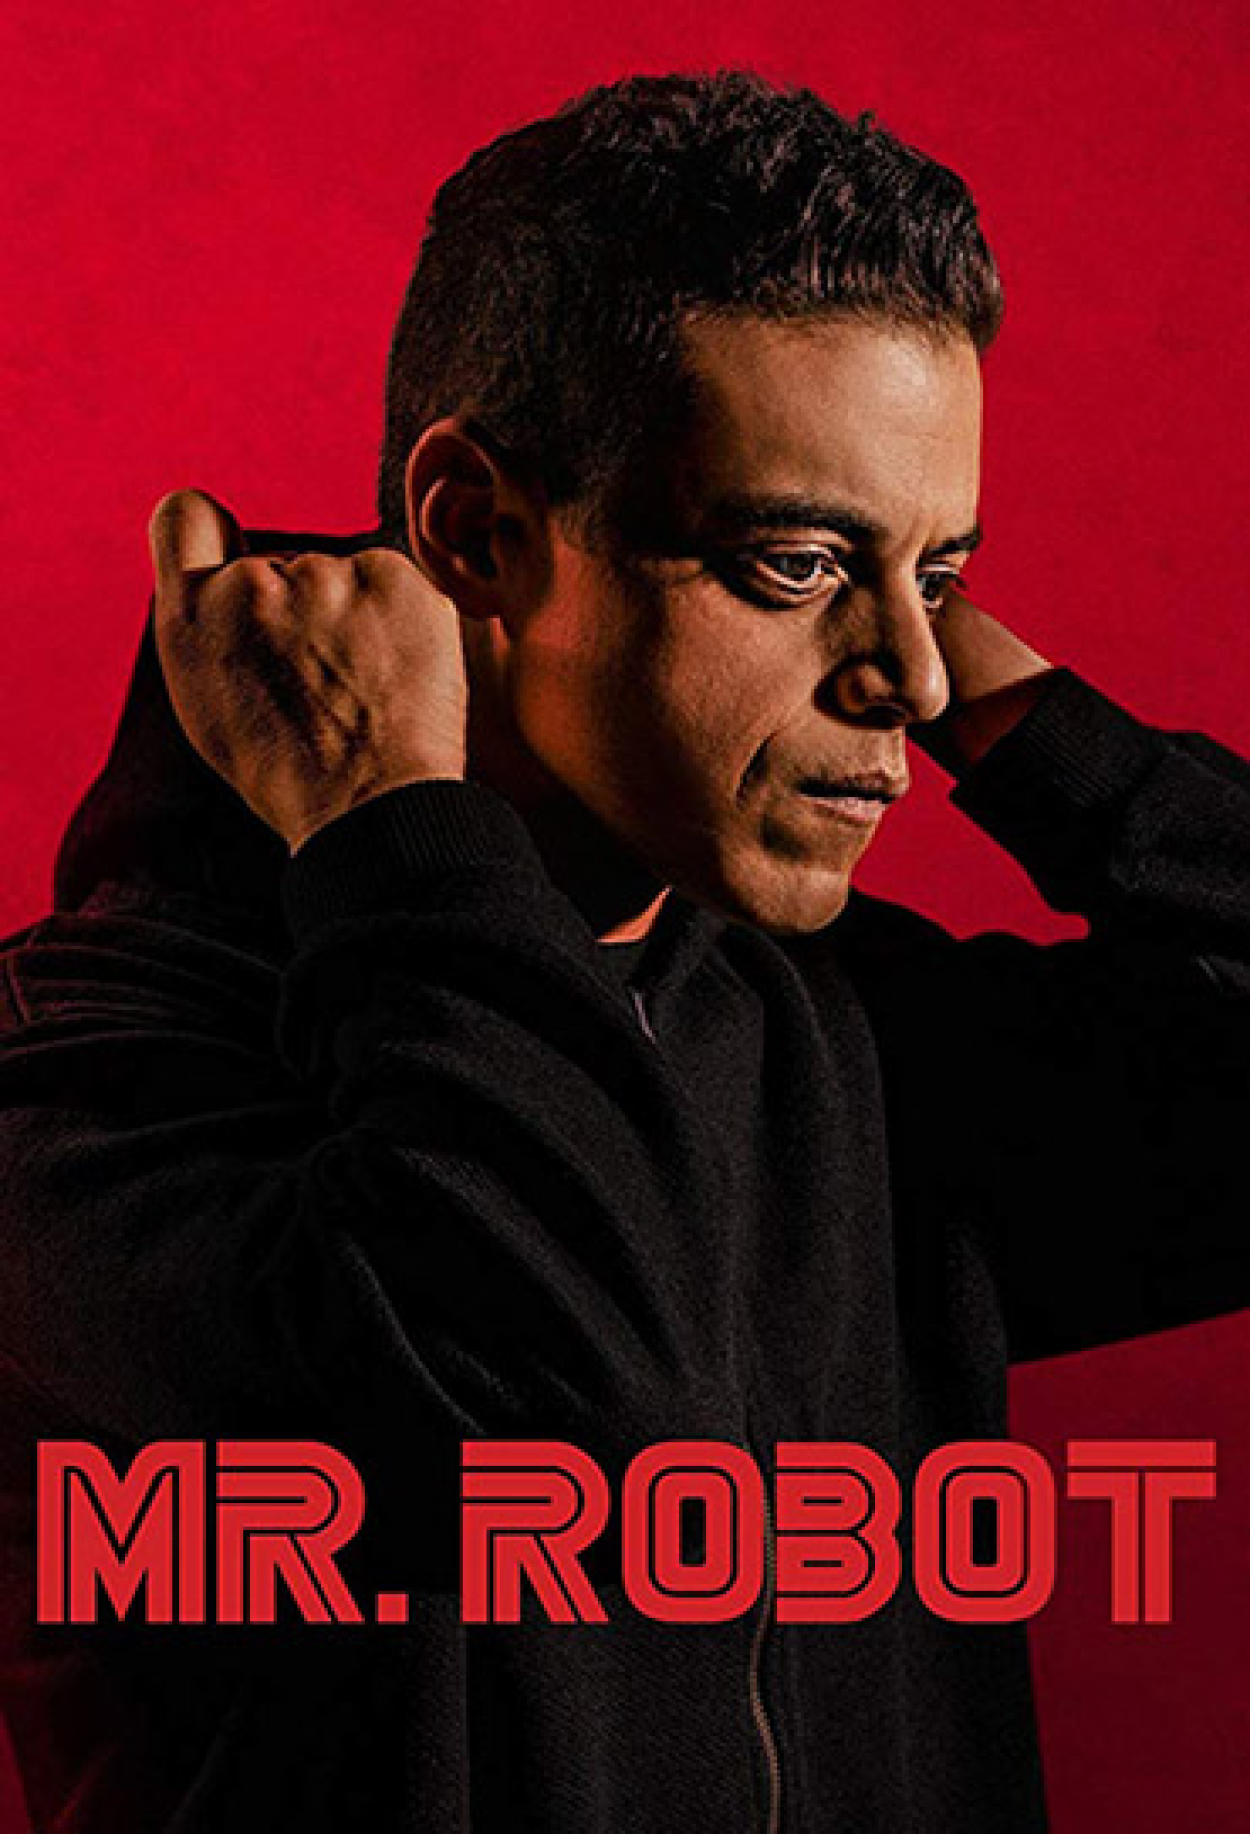 Mr. Robot - Série 2015 - AdoroCinema